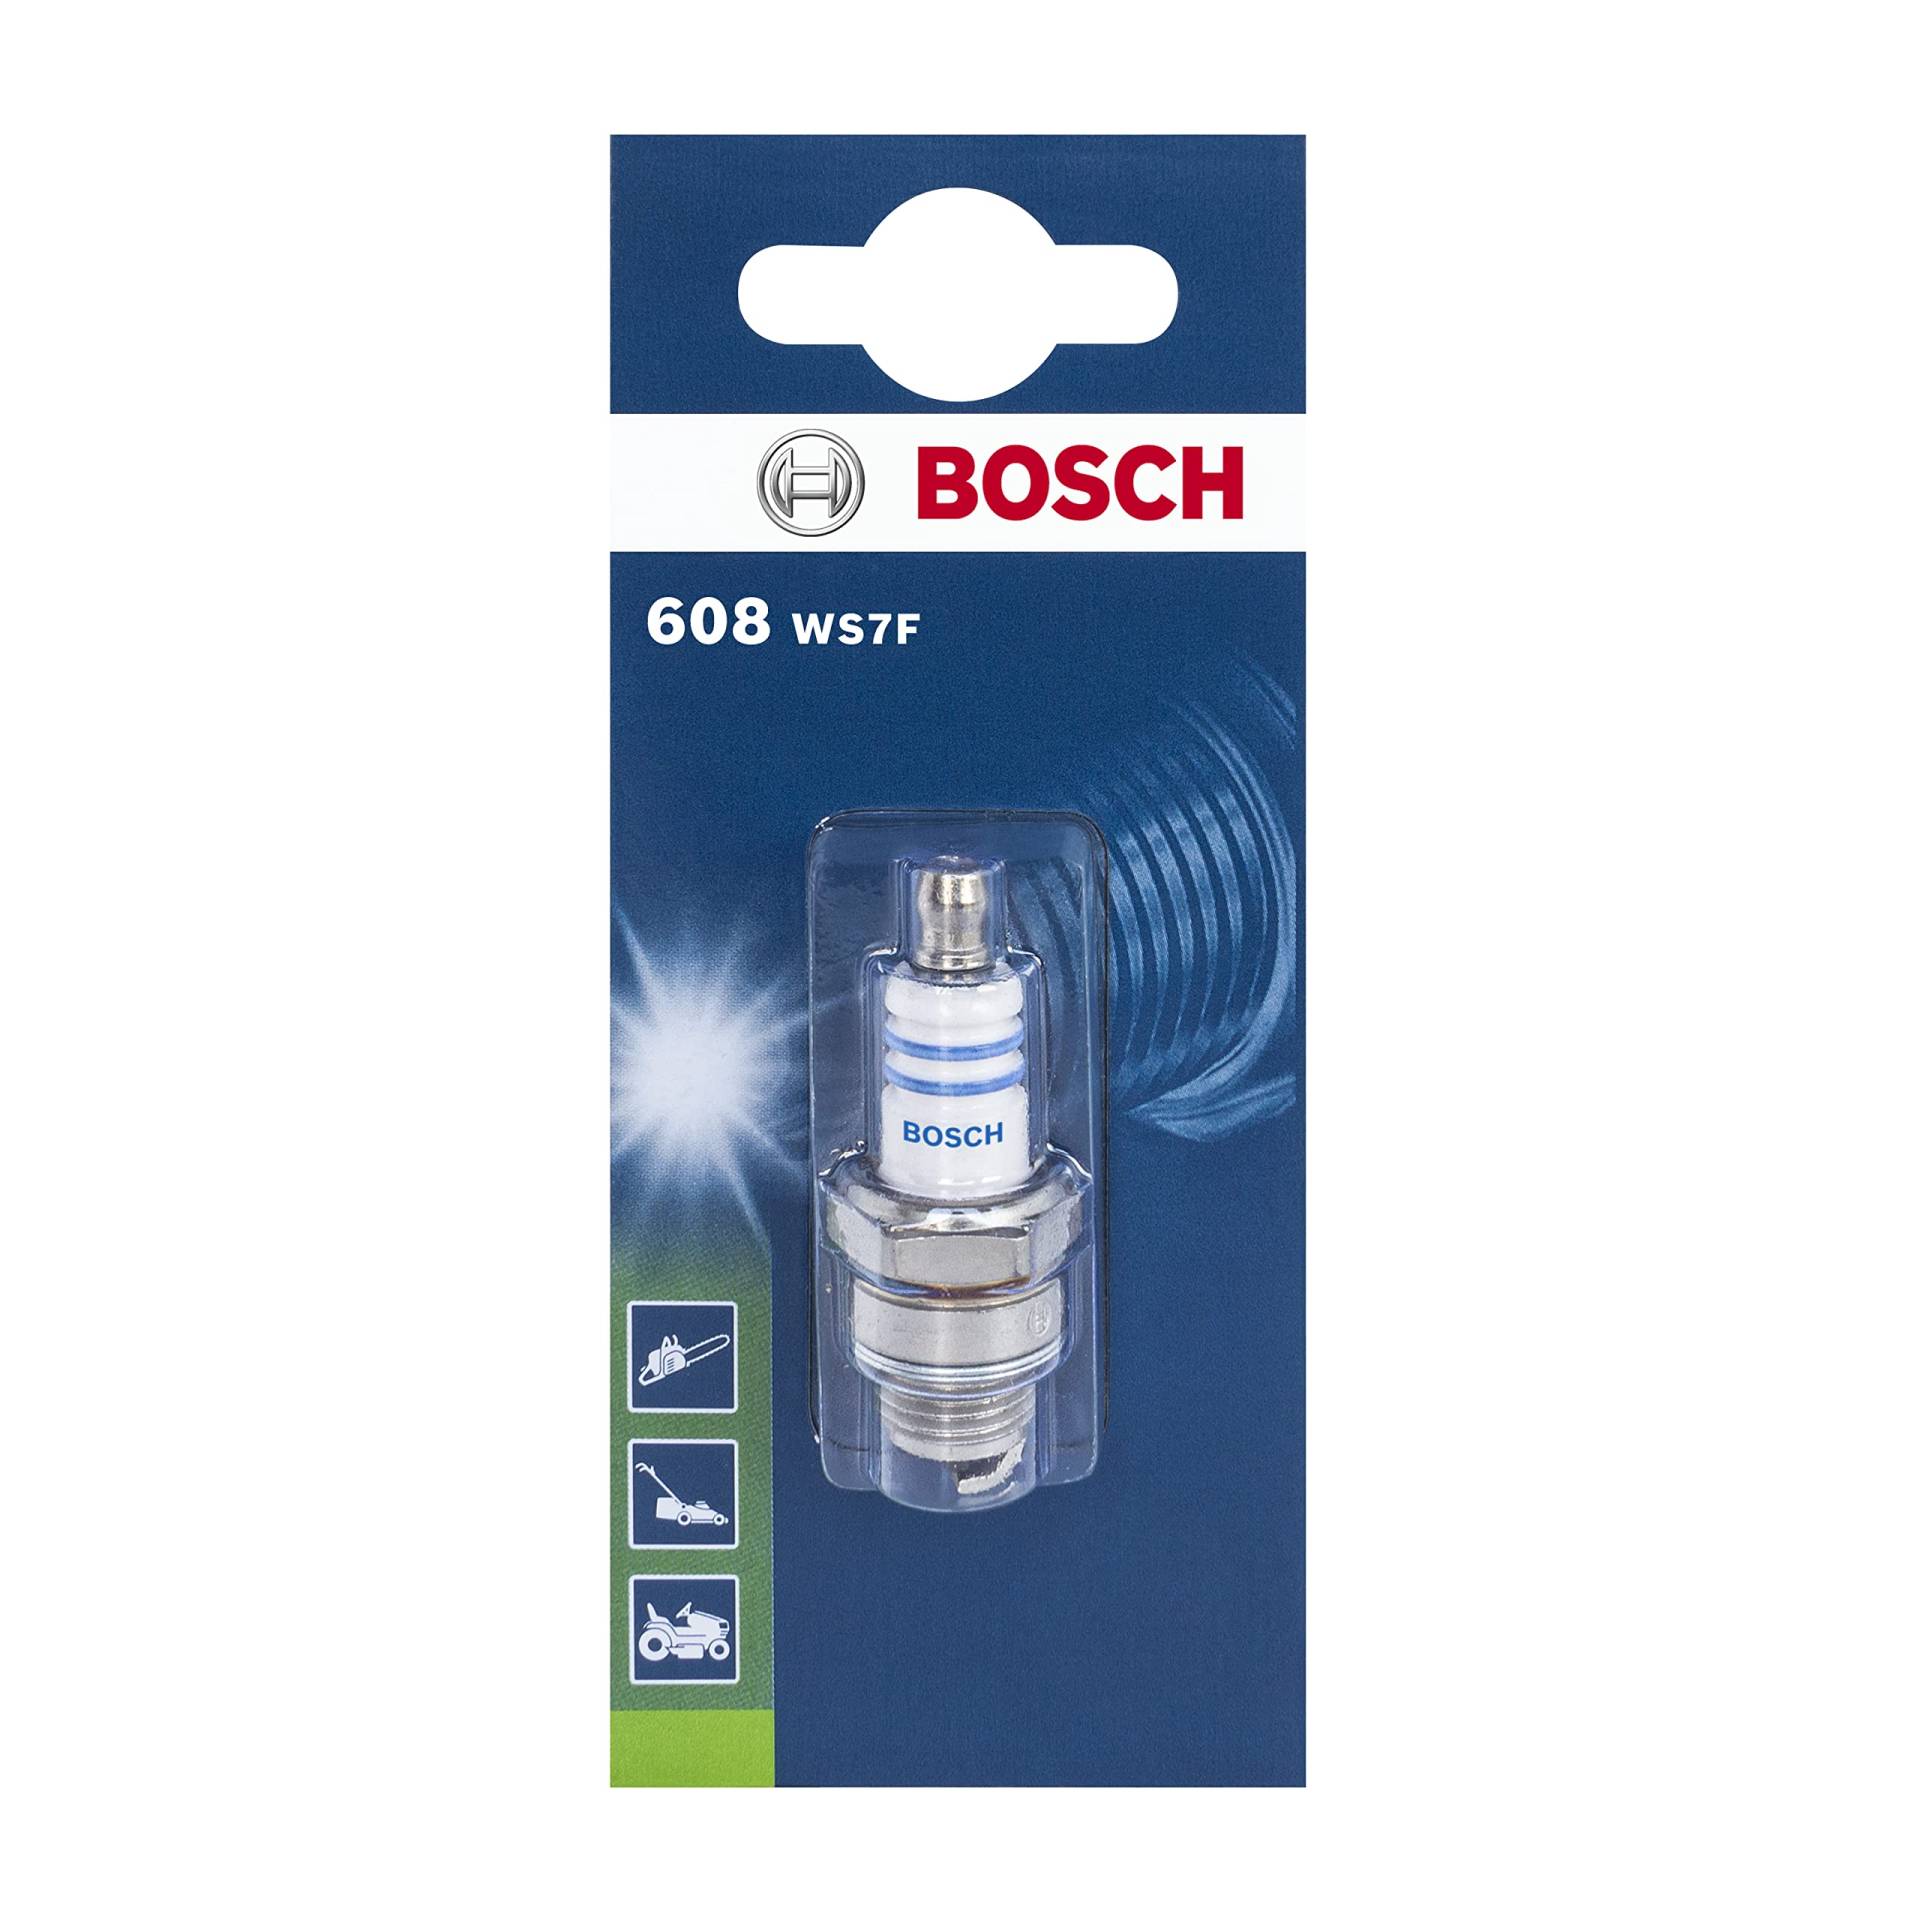 Bosch WS7F (608) - Zündkerze für Gartengeräte - 1 Stück von Bosch Automotive